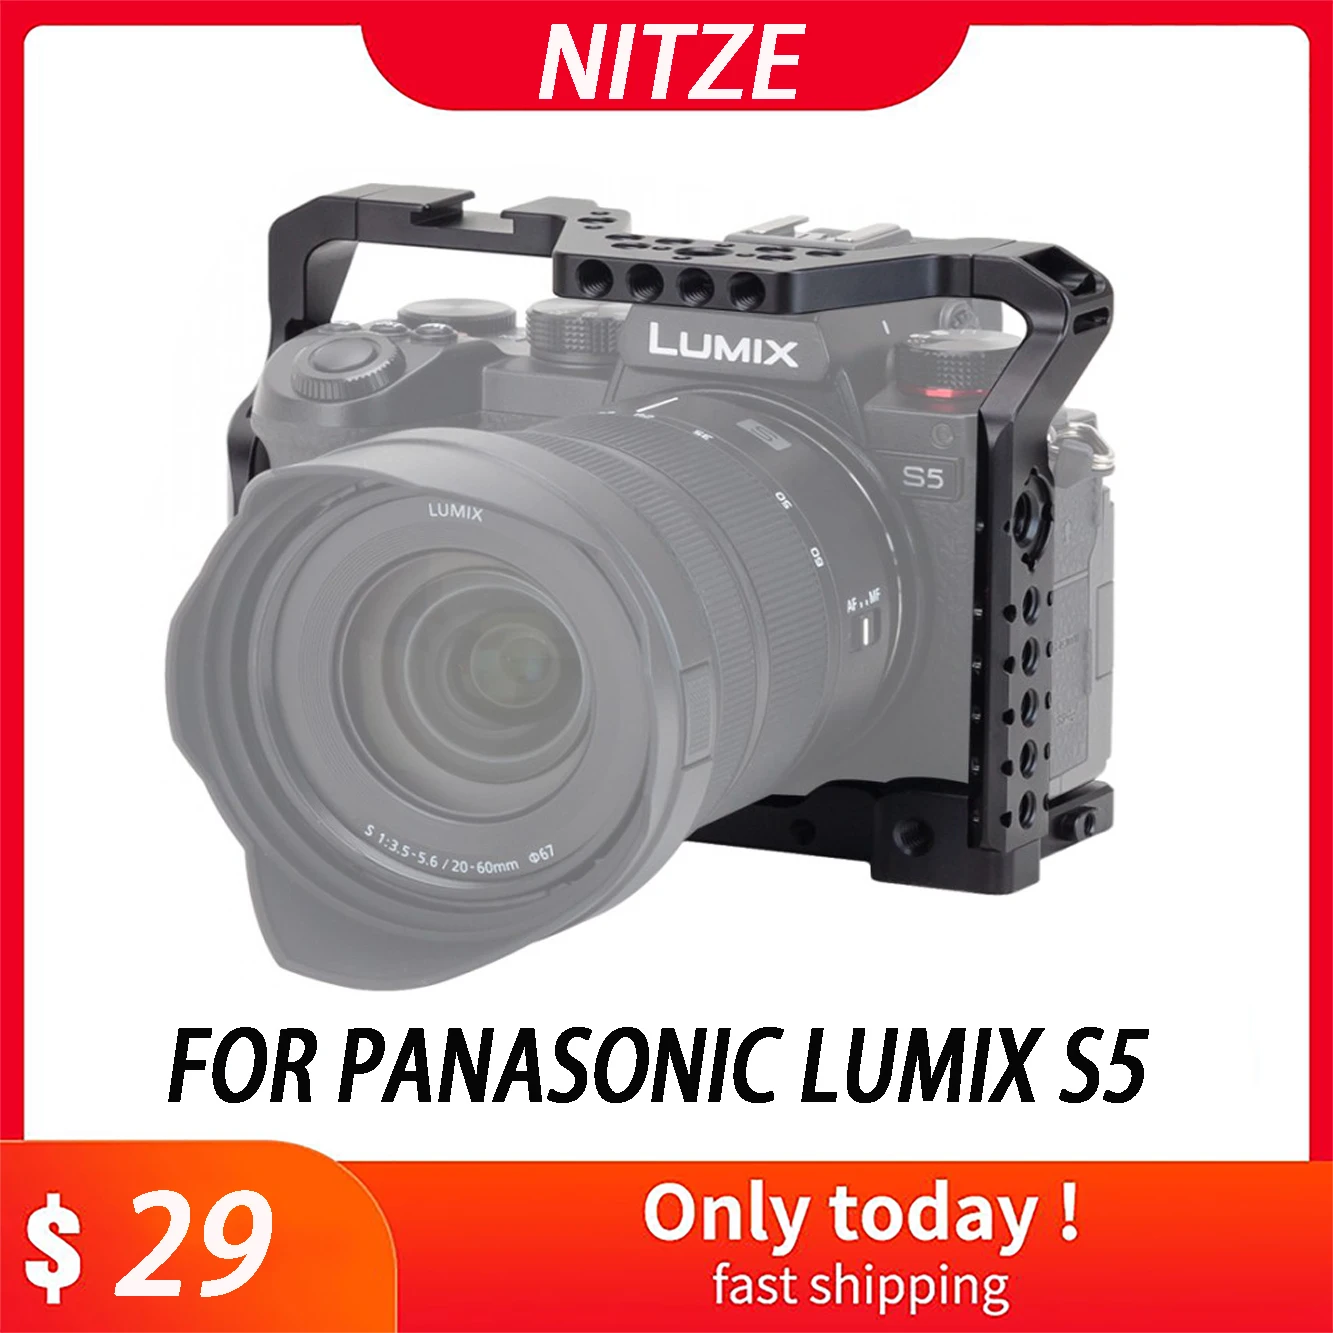 Tanie Klatka kamery NITZE do PANASONIC LUMIX S5 - TP-LS5 klatka kamery wideo